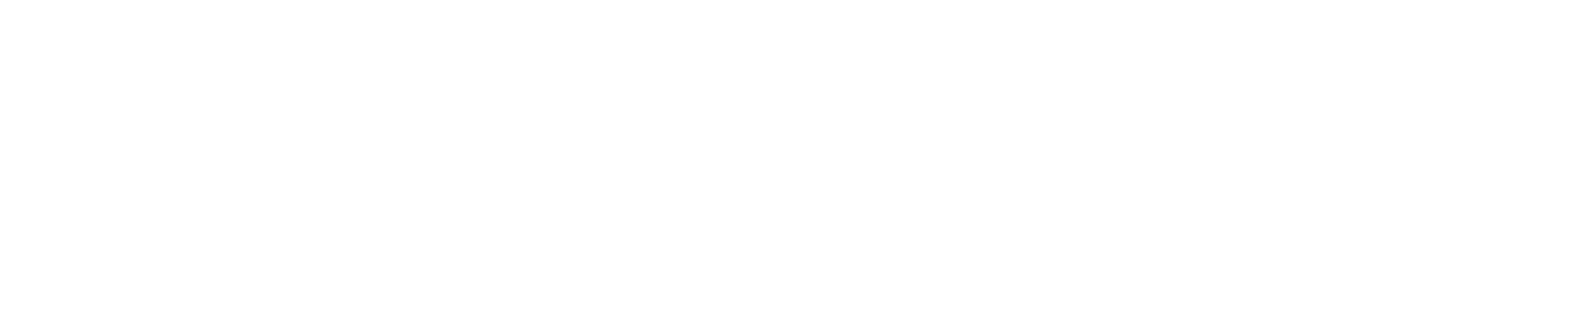 PageGroup logo grand pour les fonds sombres (PNG transparent)